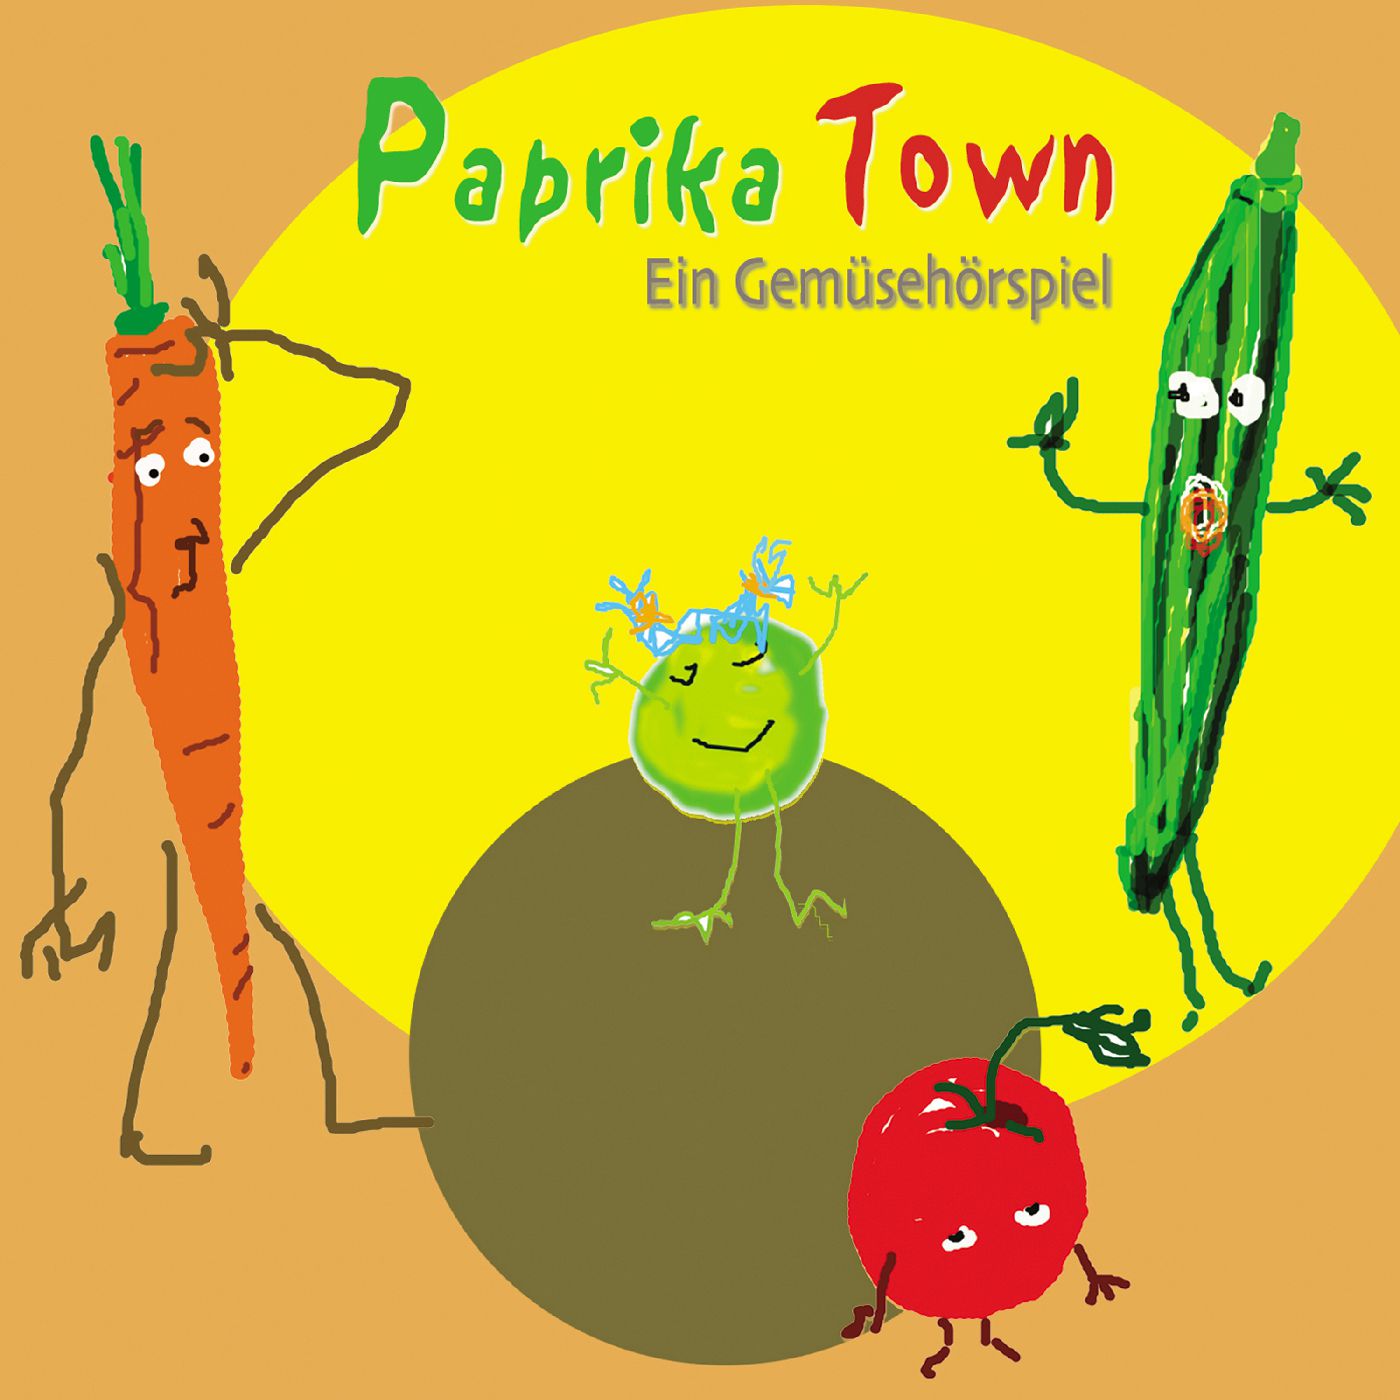 Paprikatown - ein Gemüse-Hörspiel